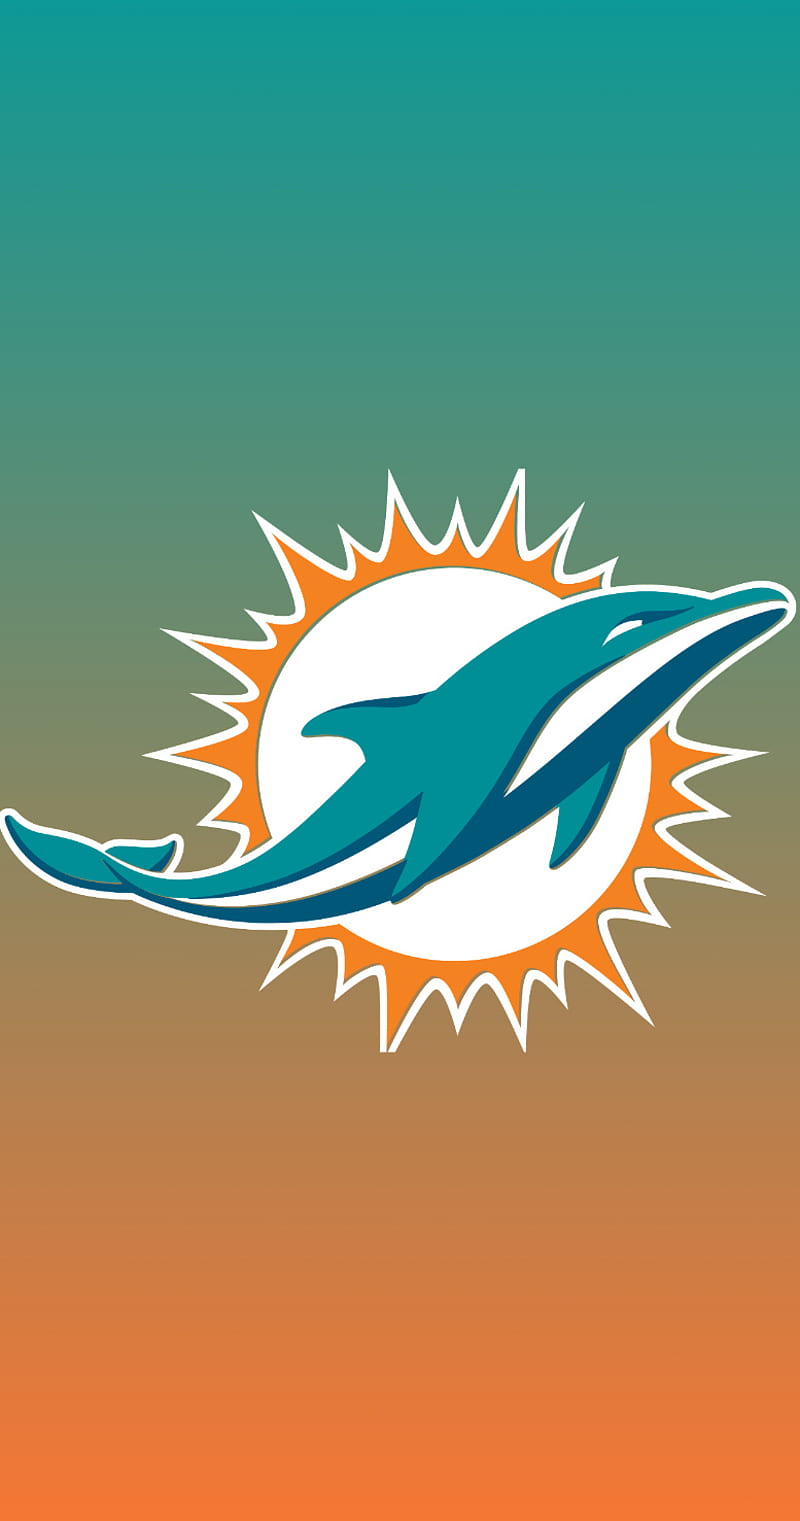 Miami Dolphins Logo Wallpapers  Top Free Miami Dolphins Logo Backgrounds   WallpaperAccess